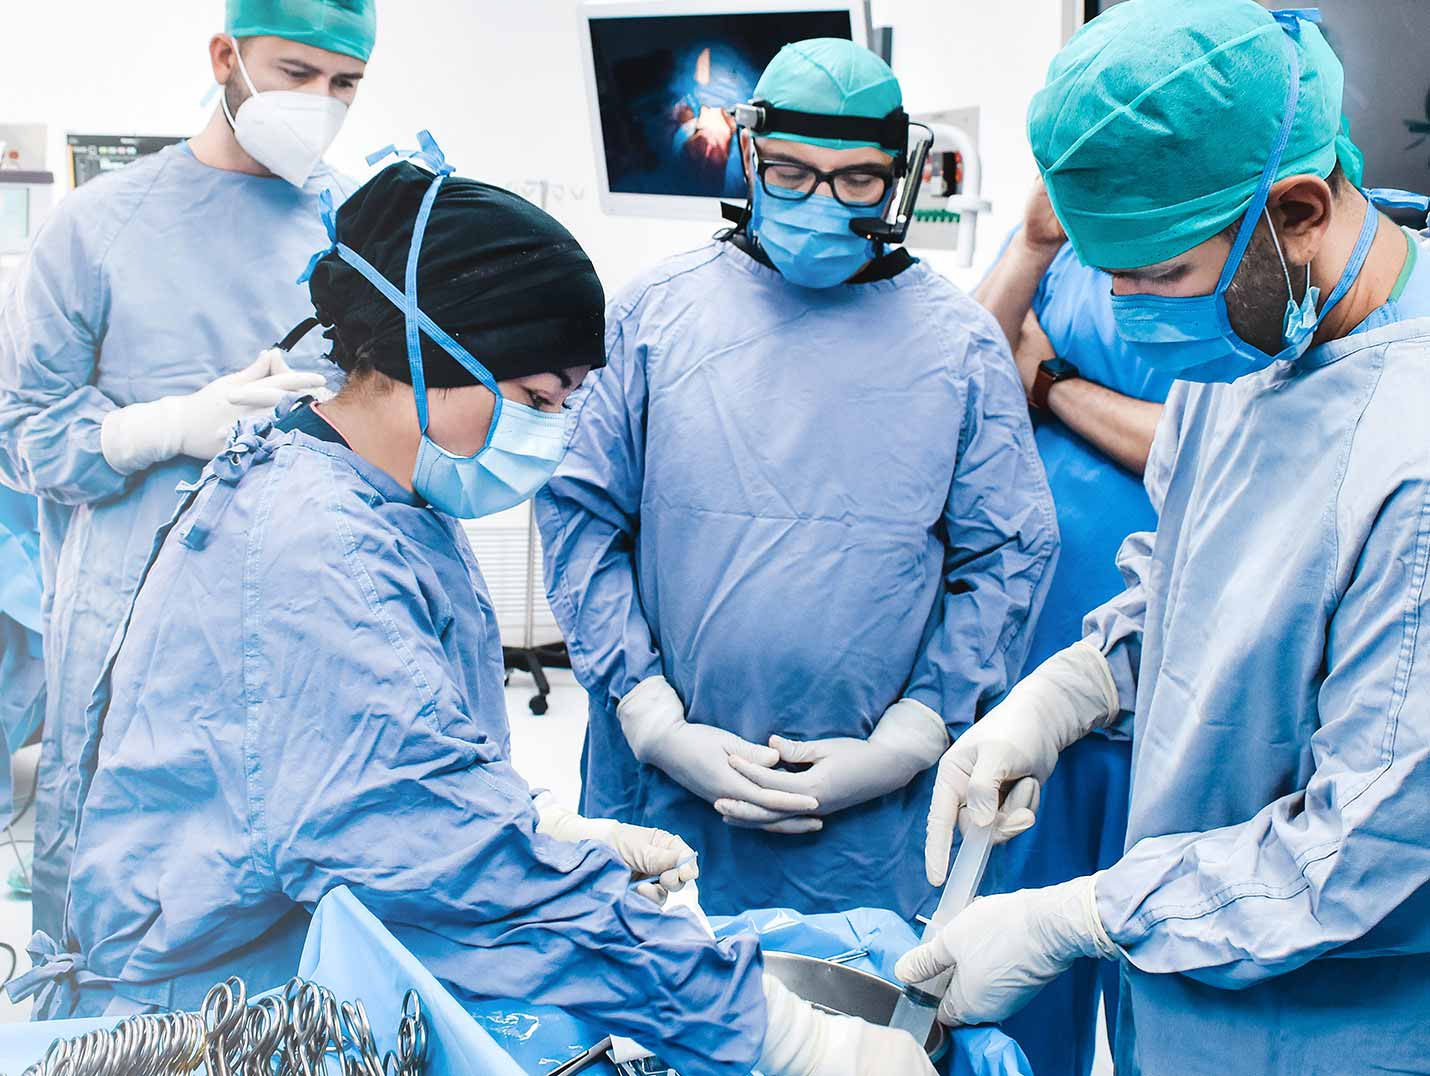 Médicos con pijama quirurgica y gorros dentro de un quirófano durante un procedimiento.